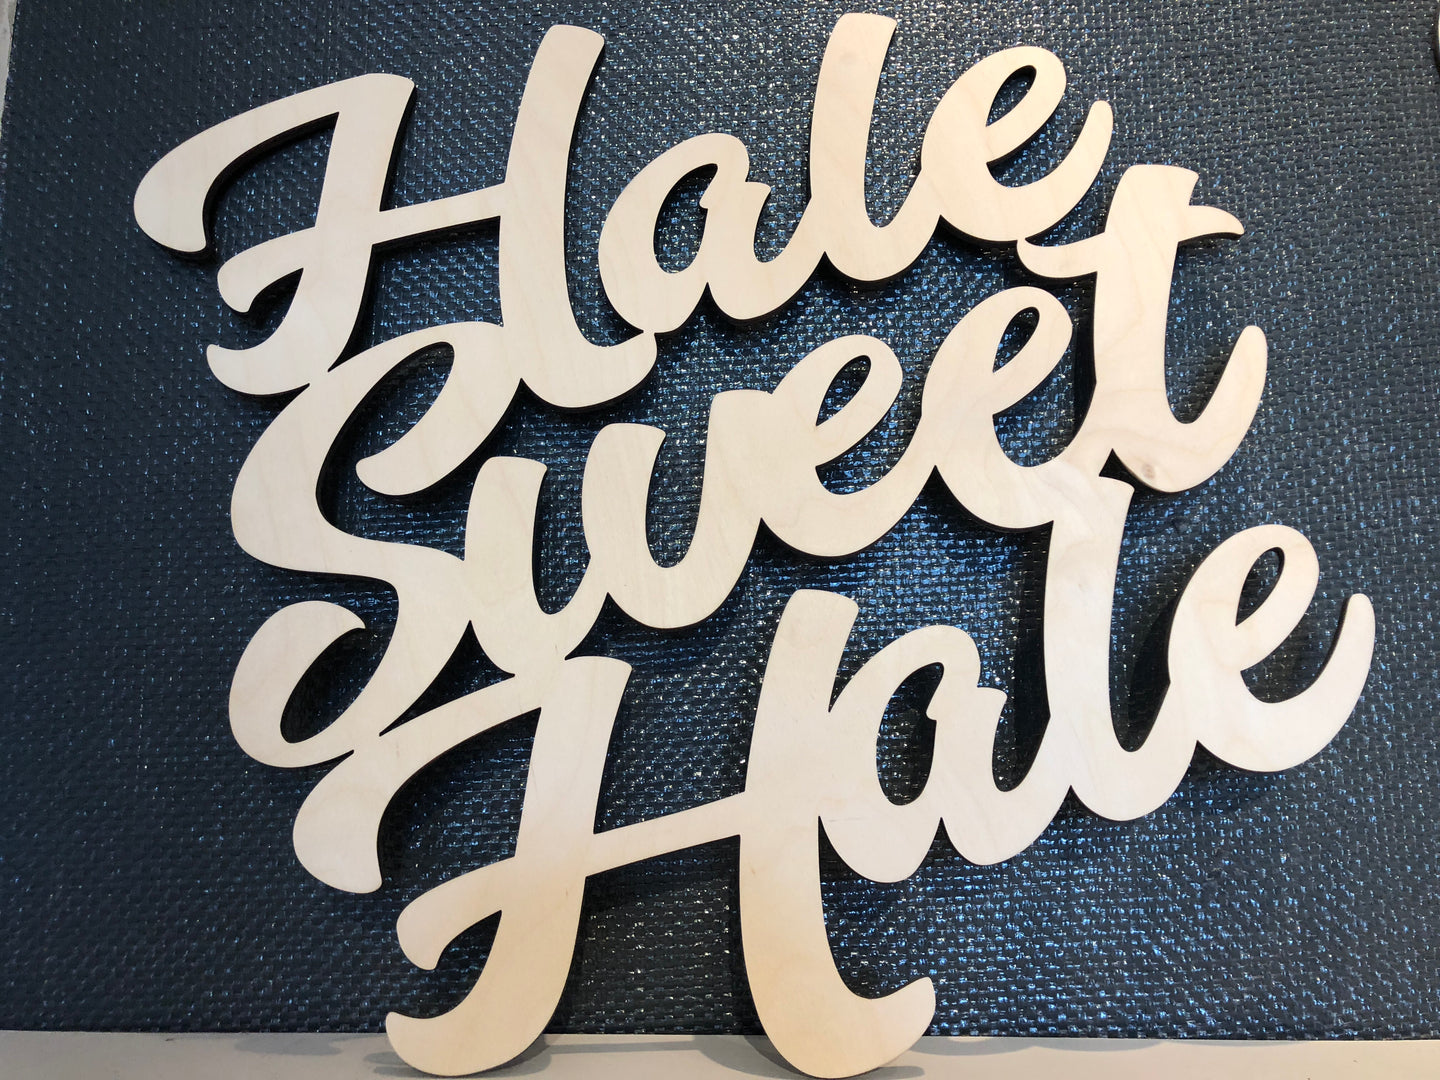 Hale Sweet Hale Pā